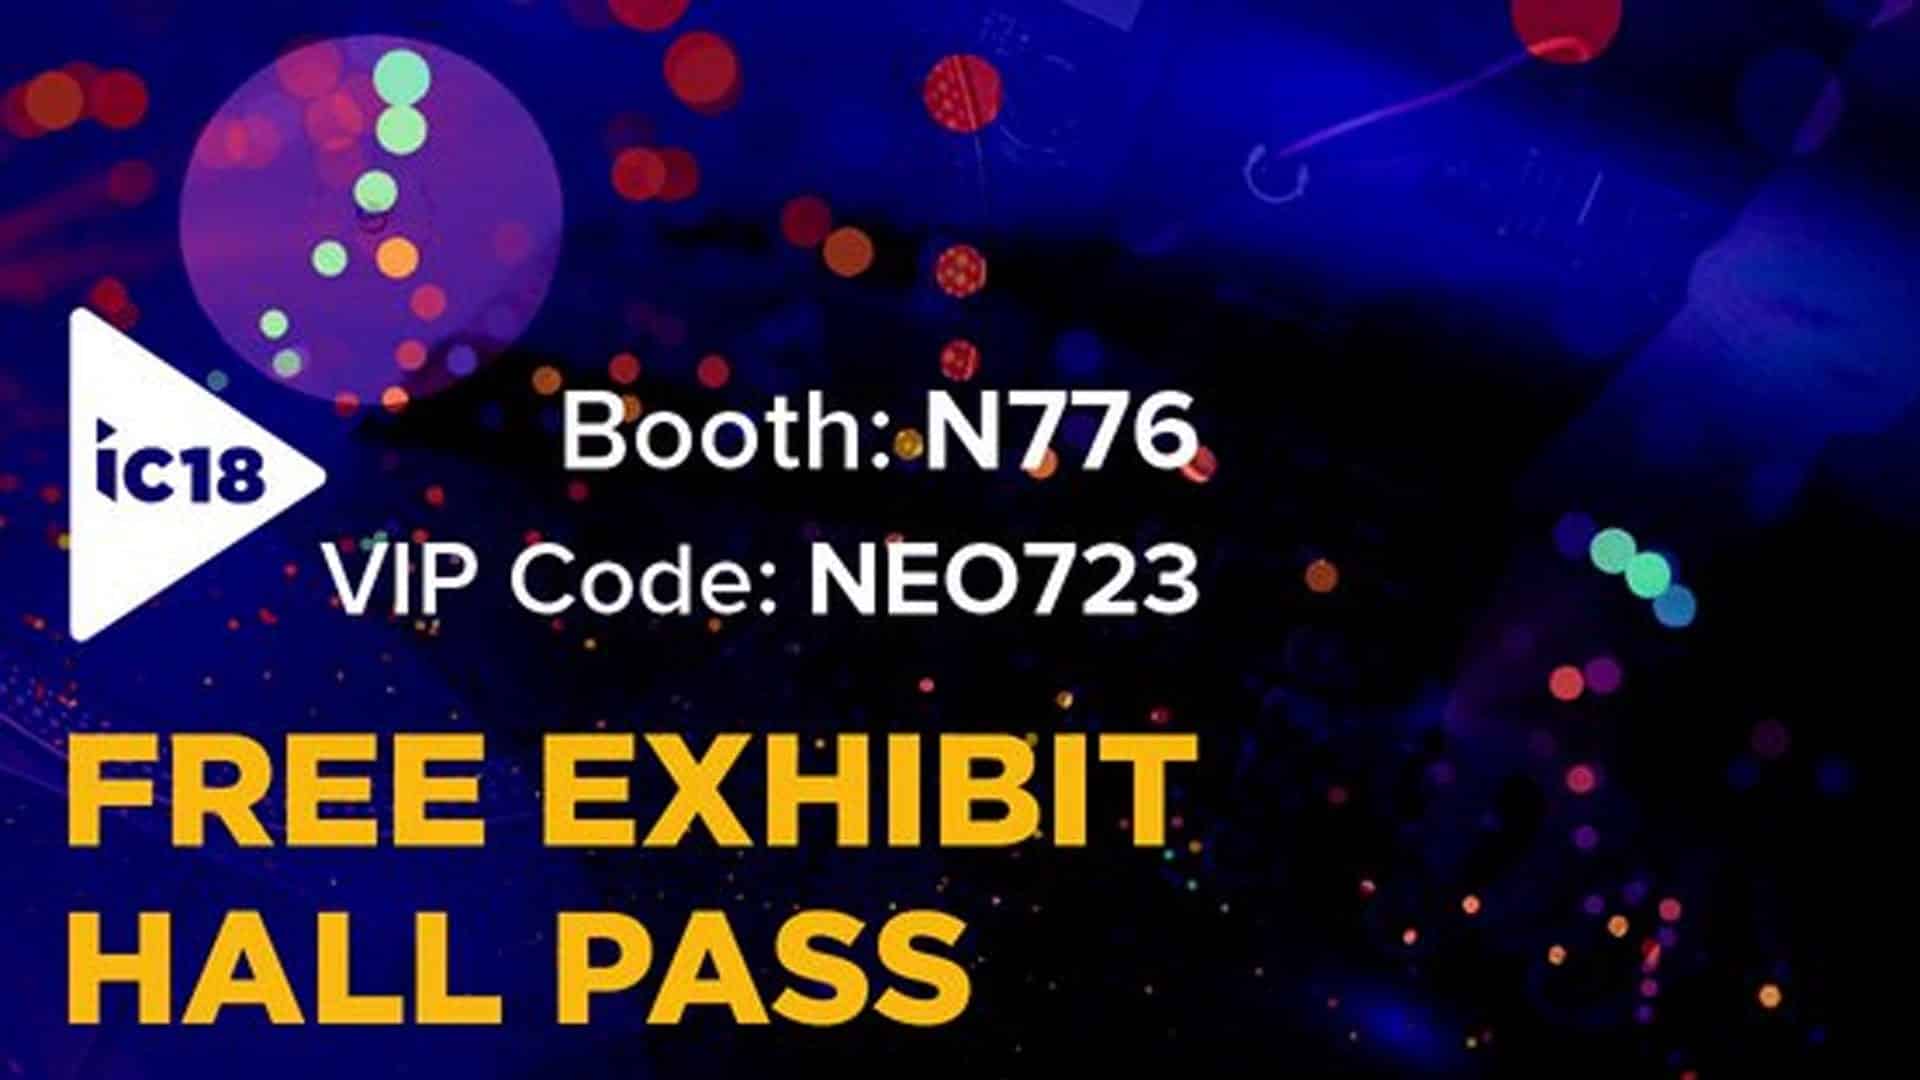 InfoComm 2018 Free Pass Booth N776 VIP Code NEO723